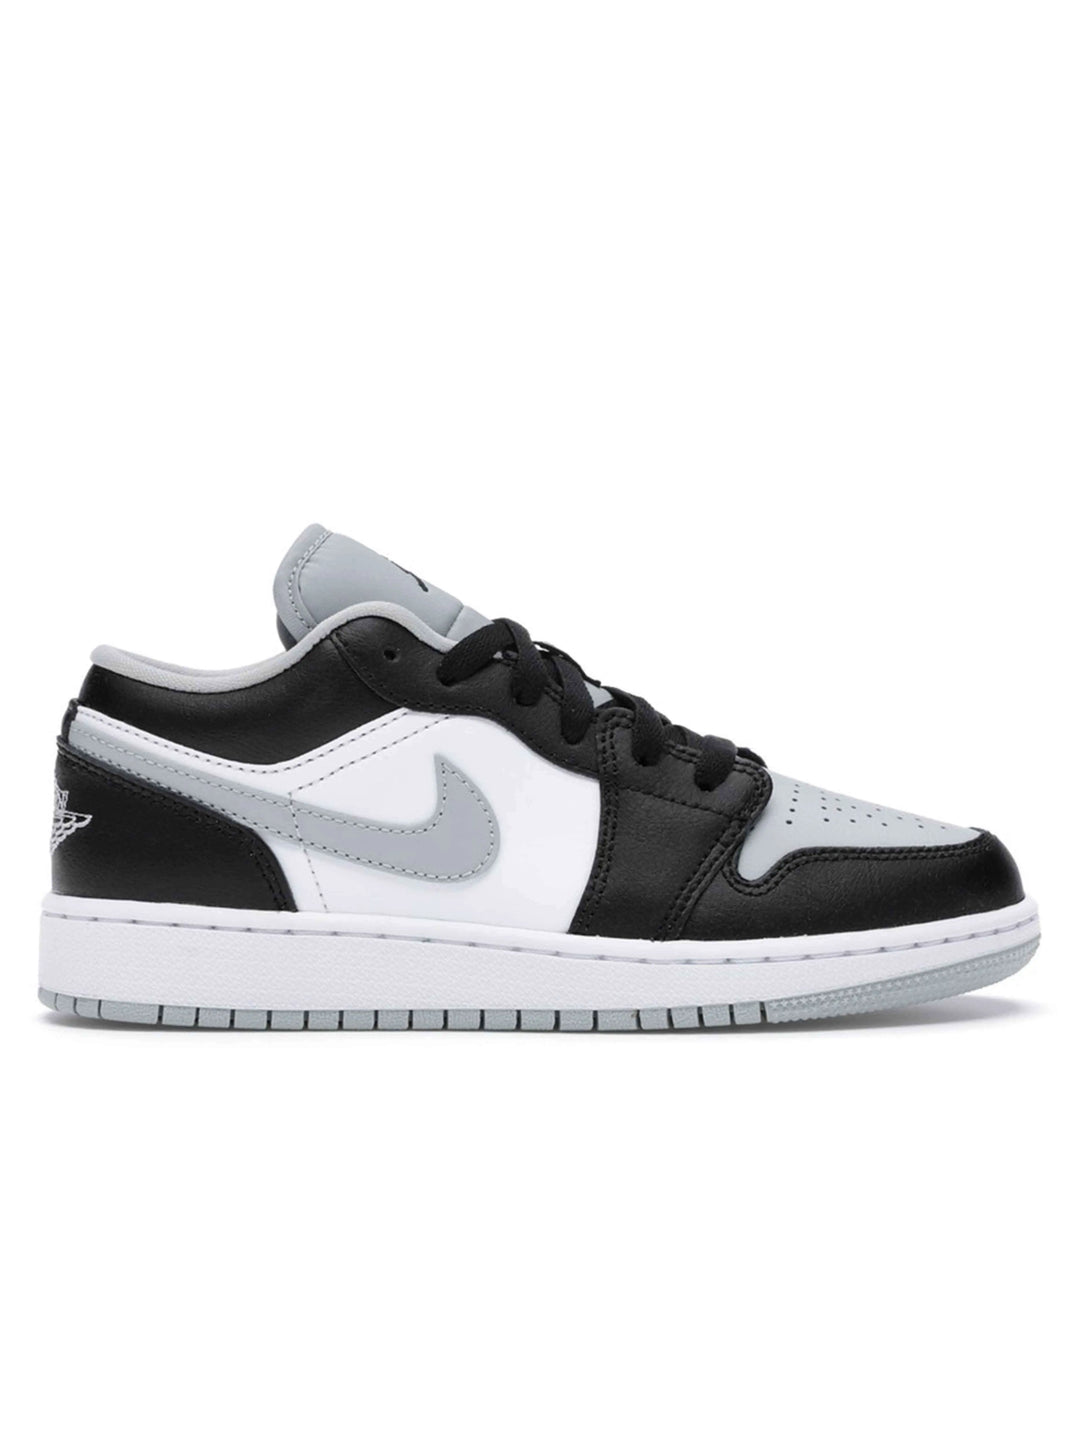 Nike Air Jordan 1 Low Grey Toe Jordan Brand